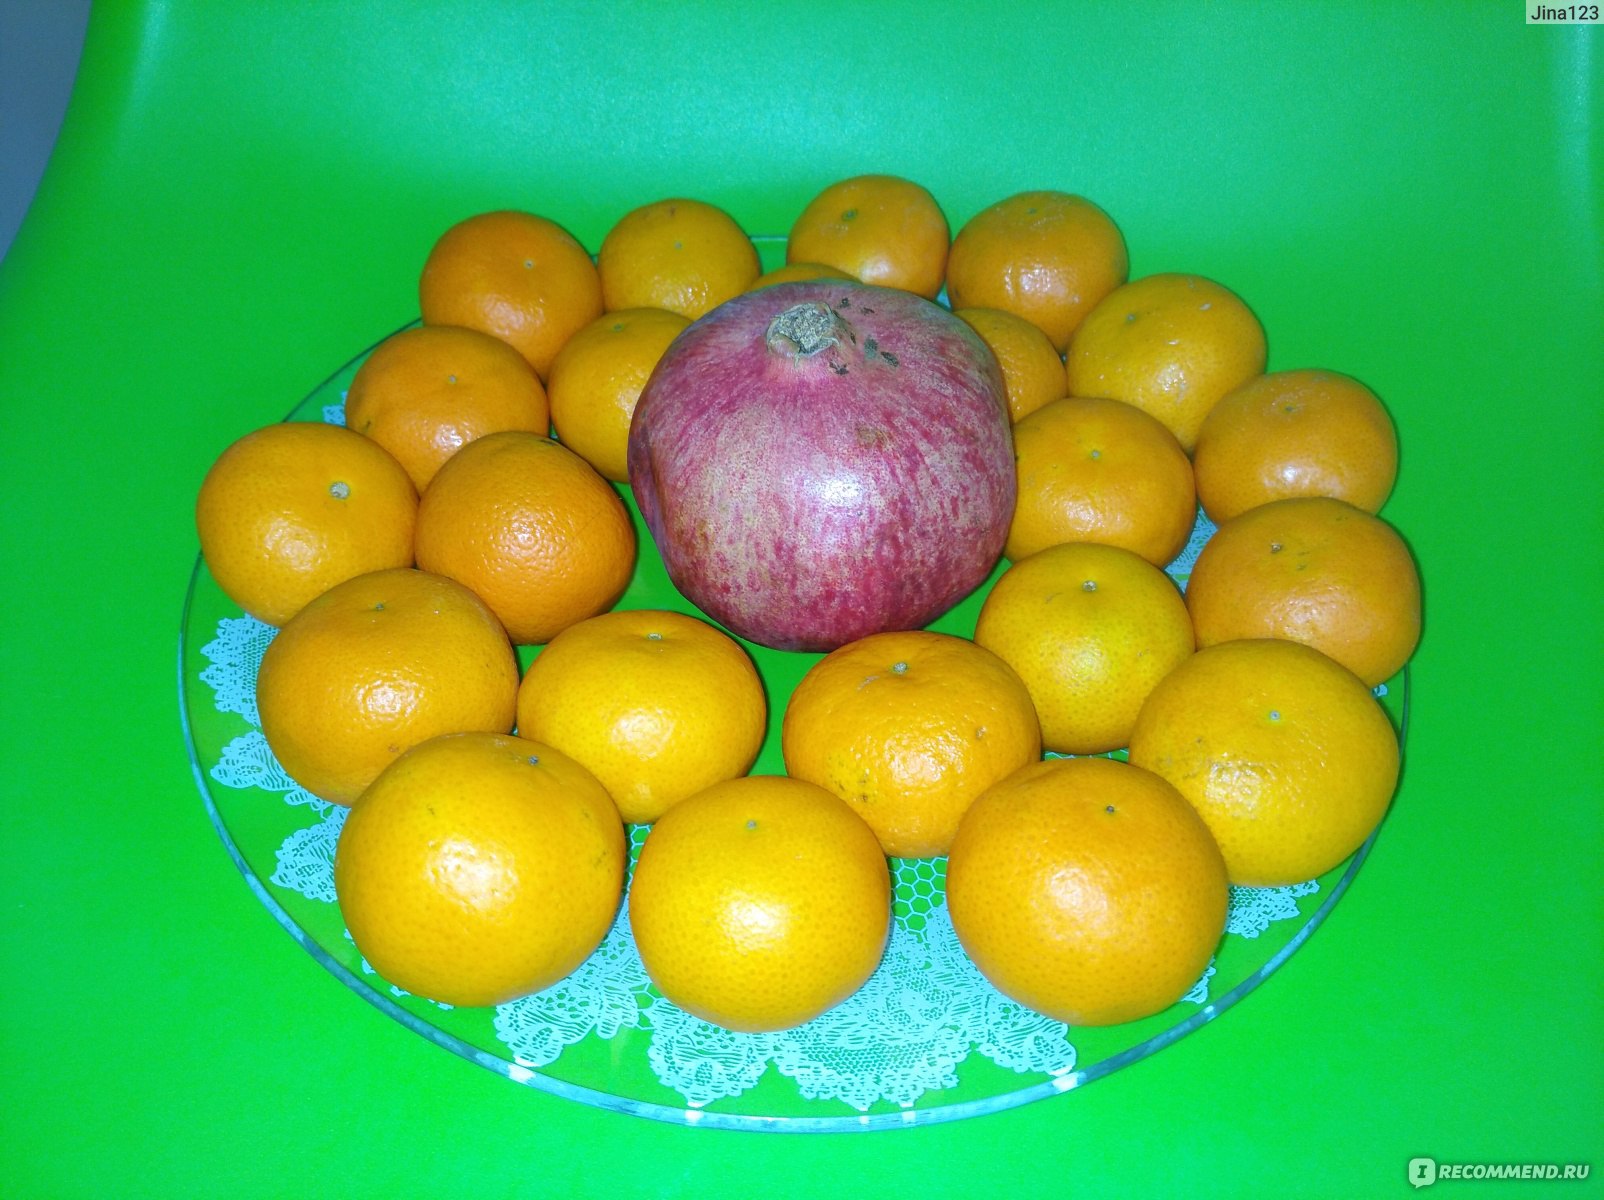 Мама купила несколько килограммов мандаринов апельсинов яблок